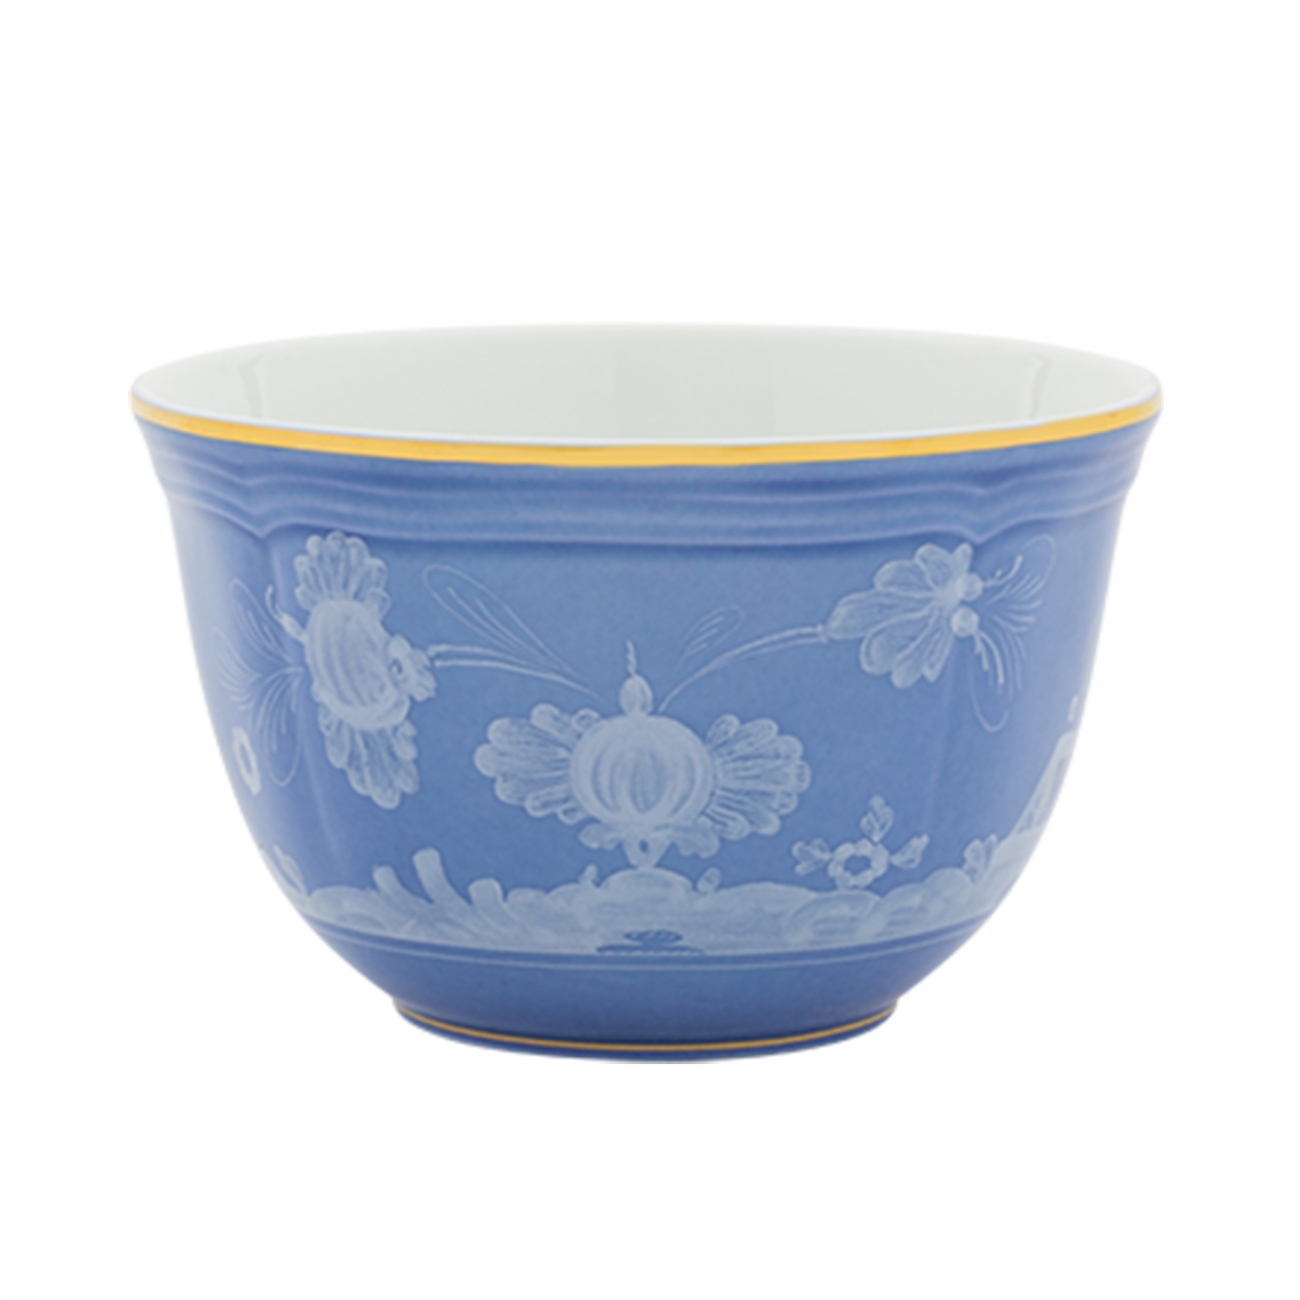 Ginori 1735 Oriente Italiano Rice Bowl Set of 2